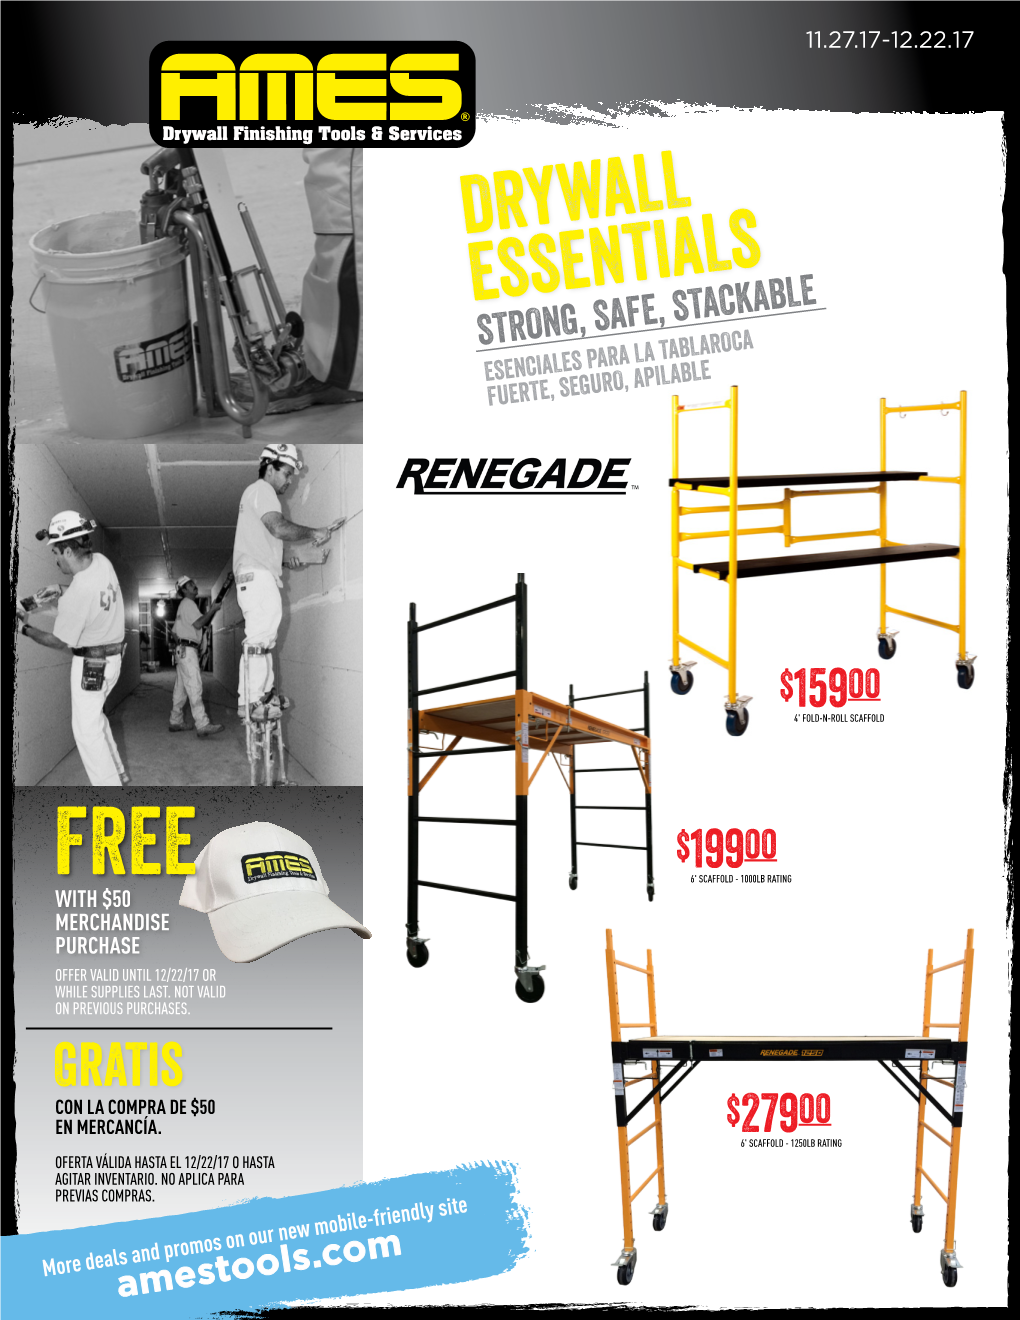 Drywall Essentials Strong, Safe, Stackable Esenciales Para La Tablaroca Fuerte, Seguro, Apilable